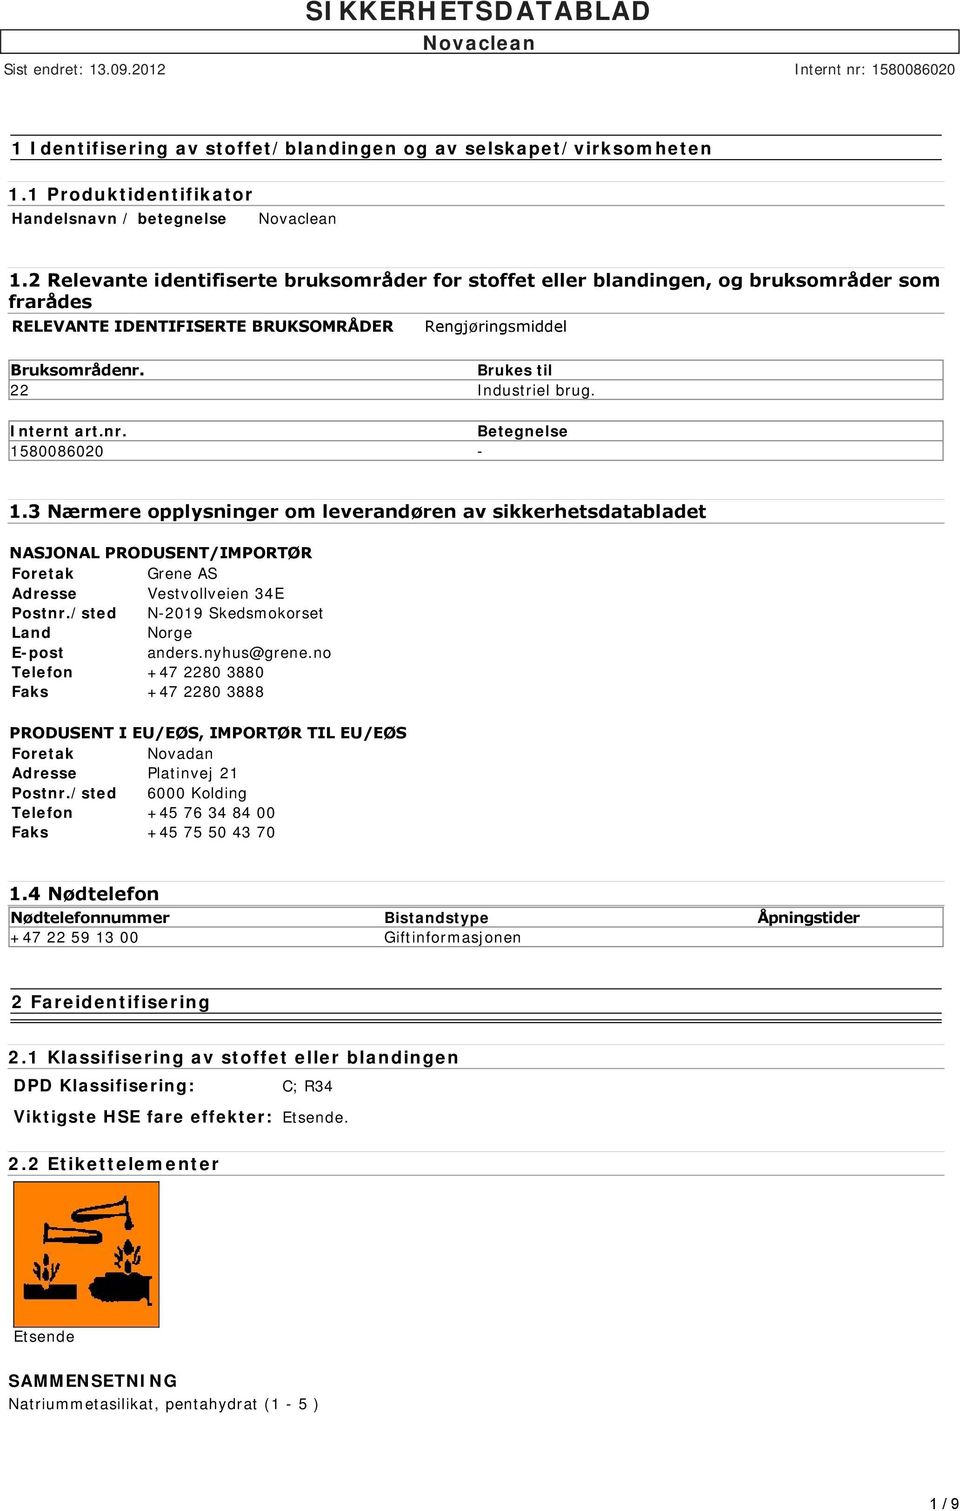 Internt art.nr. Betegnelse 1580086020-1.3 Nærmere opplysninger om leverandøren av sikkerhetsdatabladet NASJONAL PRODUSENT/IMPORTØR Foretak Grene AS Adresse Vestvollveien 34E Postnr.